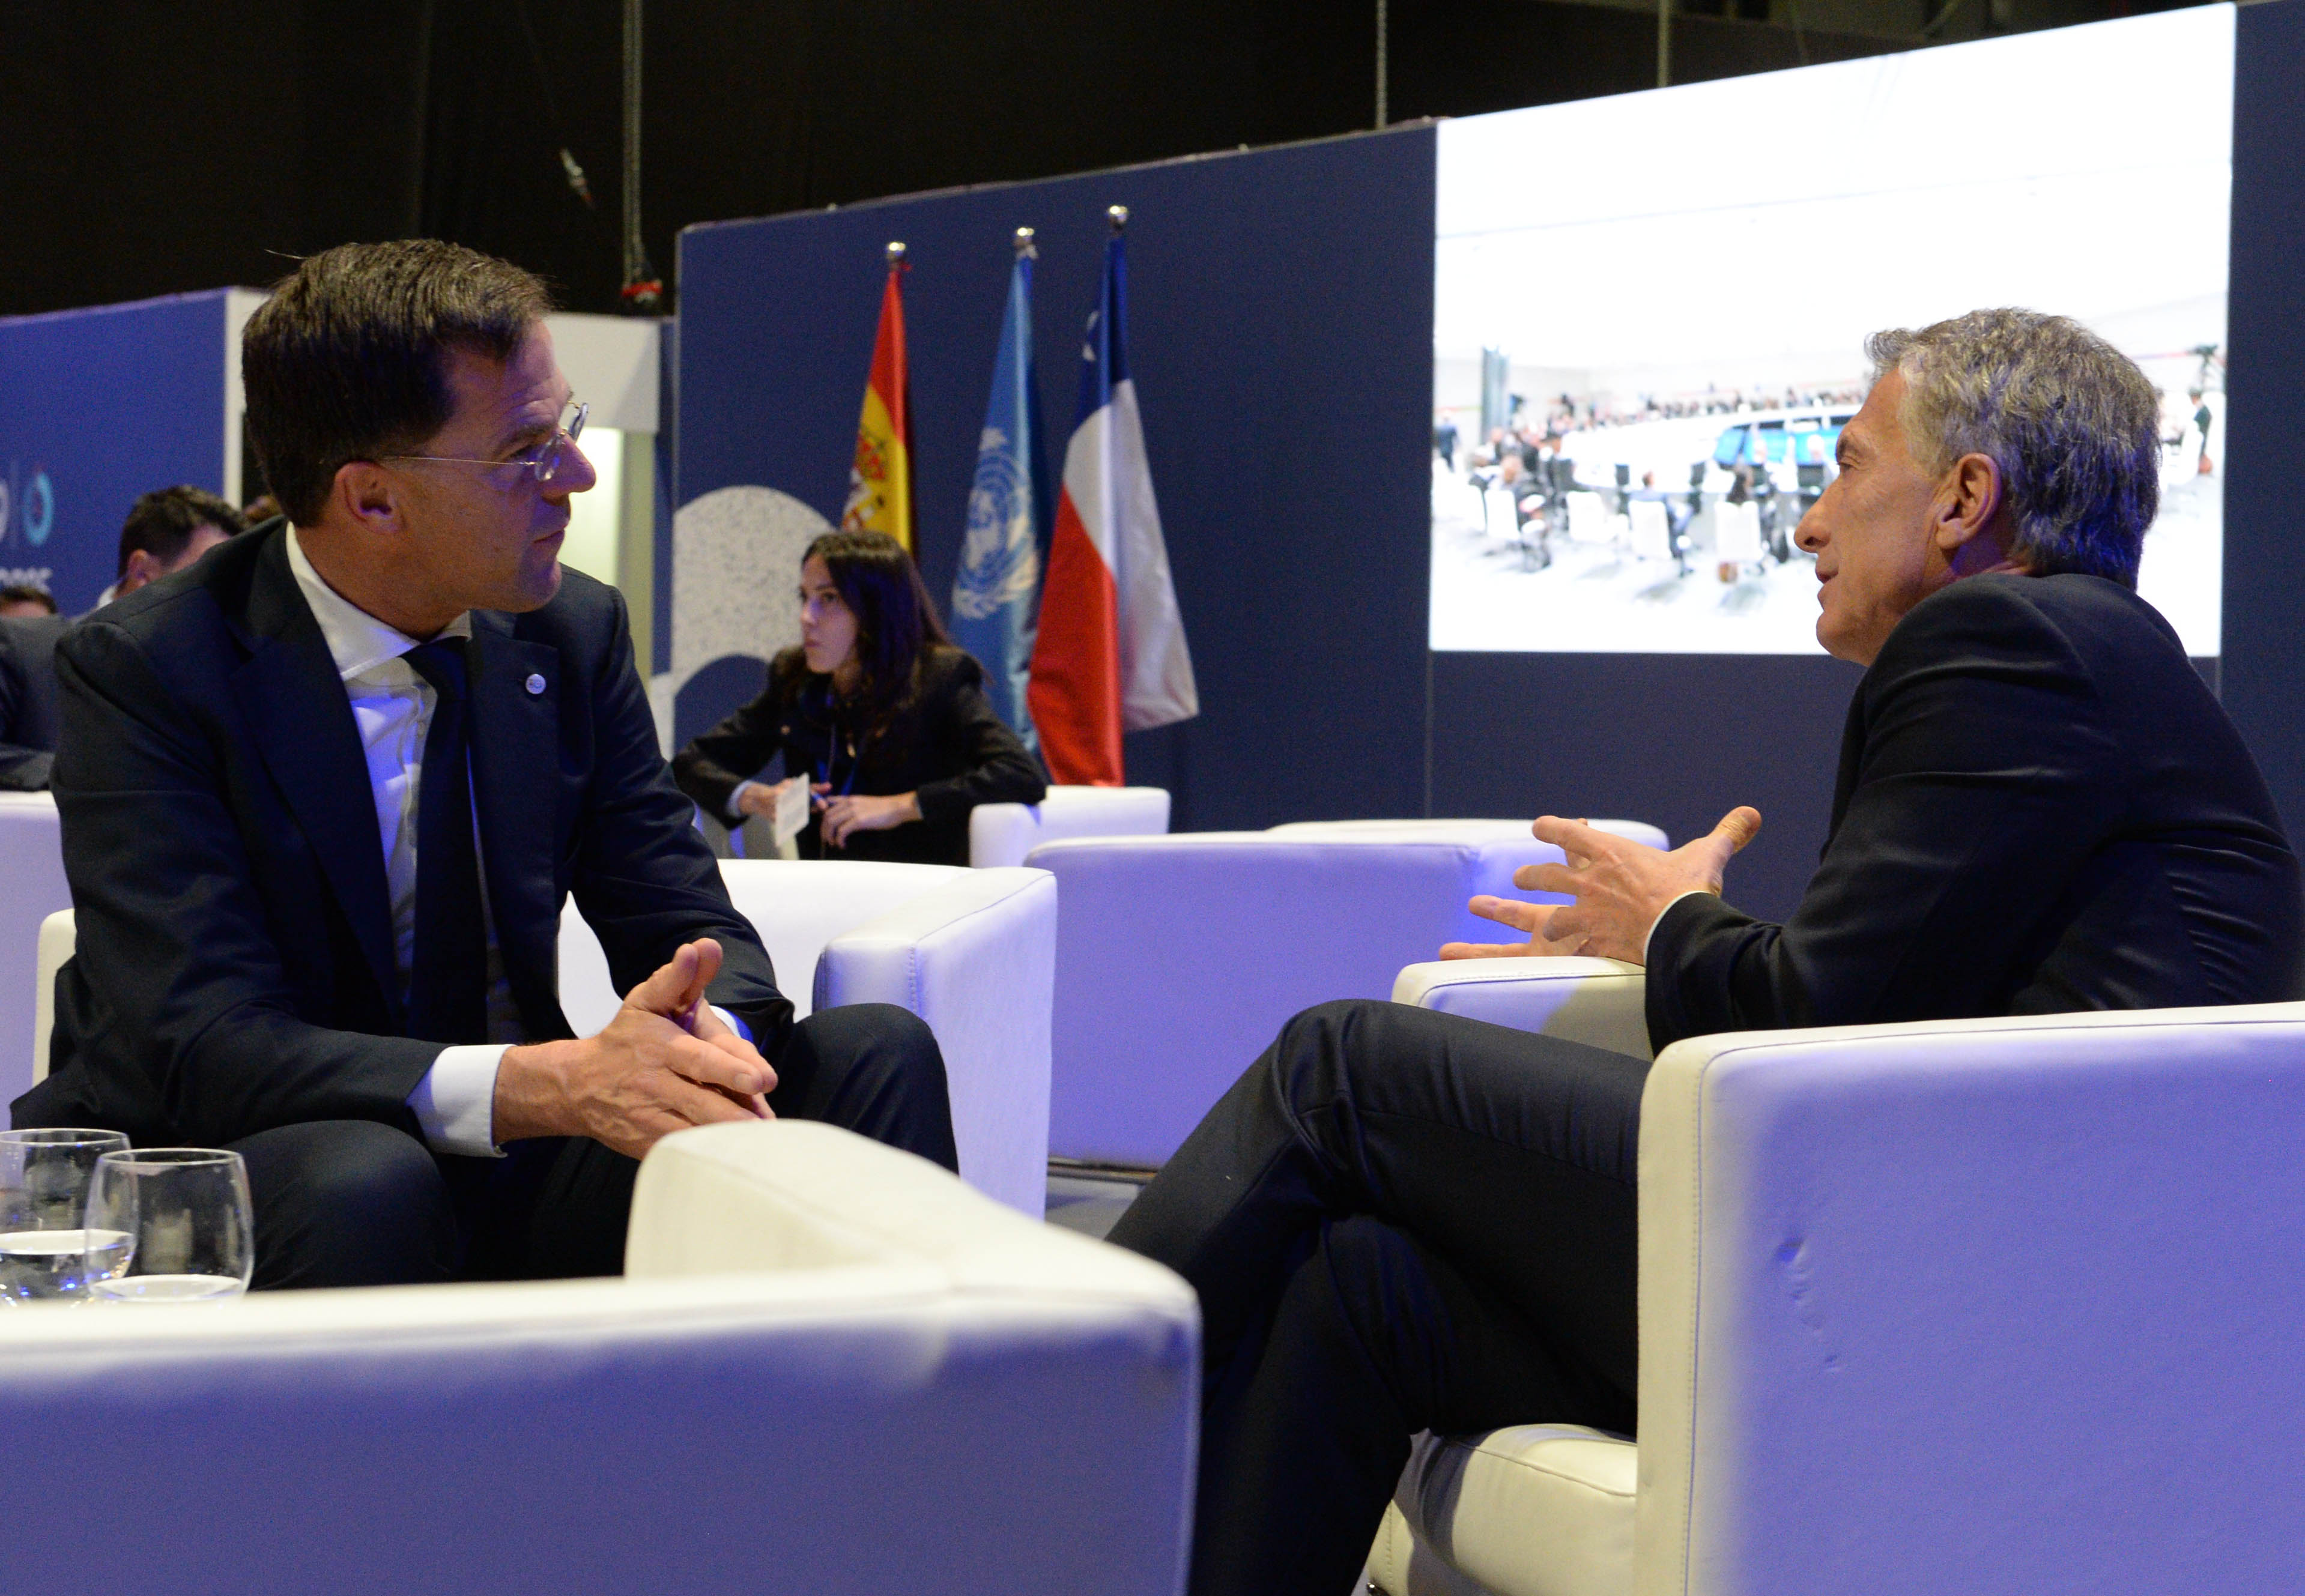 El Presidente Macri mantuvo un encuentro bilateral con el primer ministro de los Países Bajos, Mark Rutte.